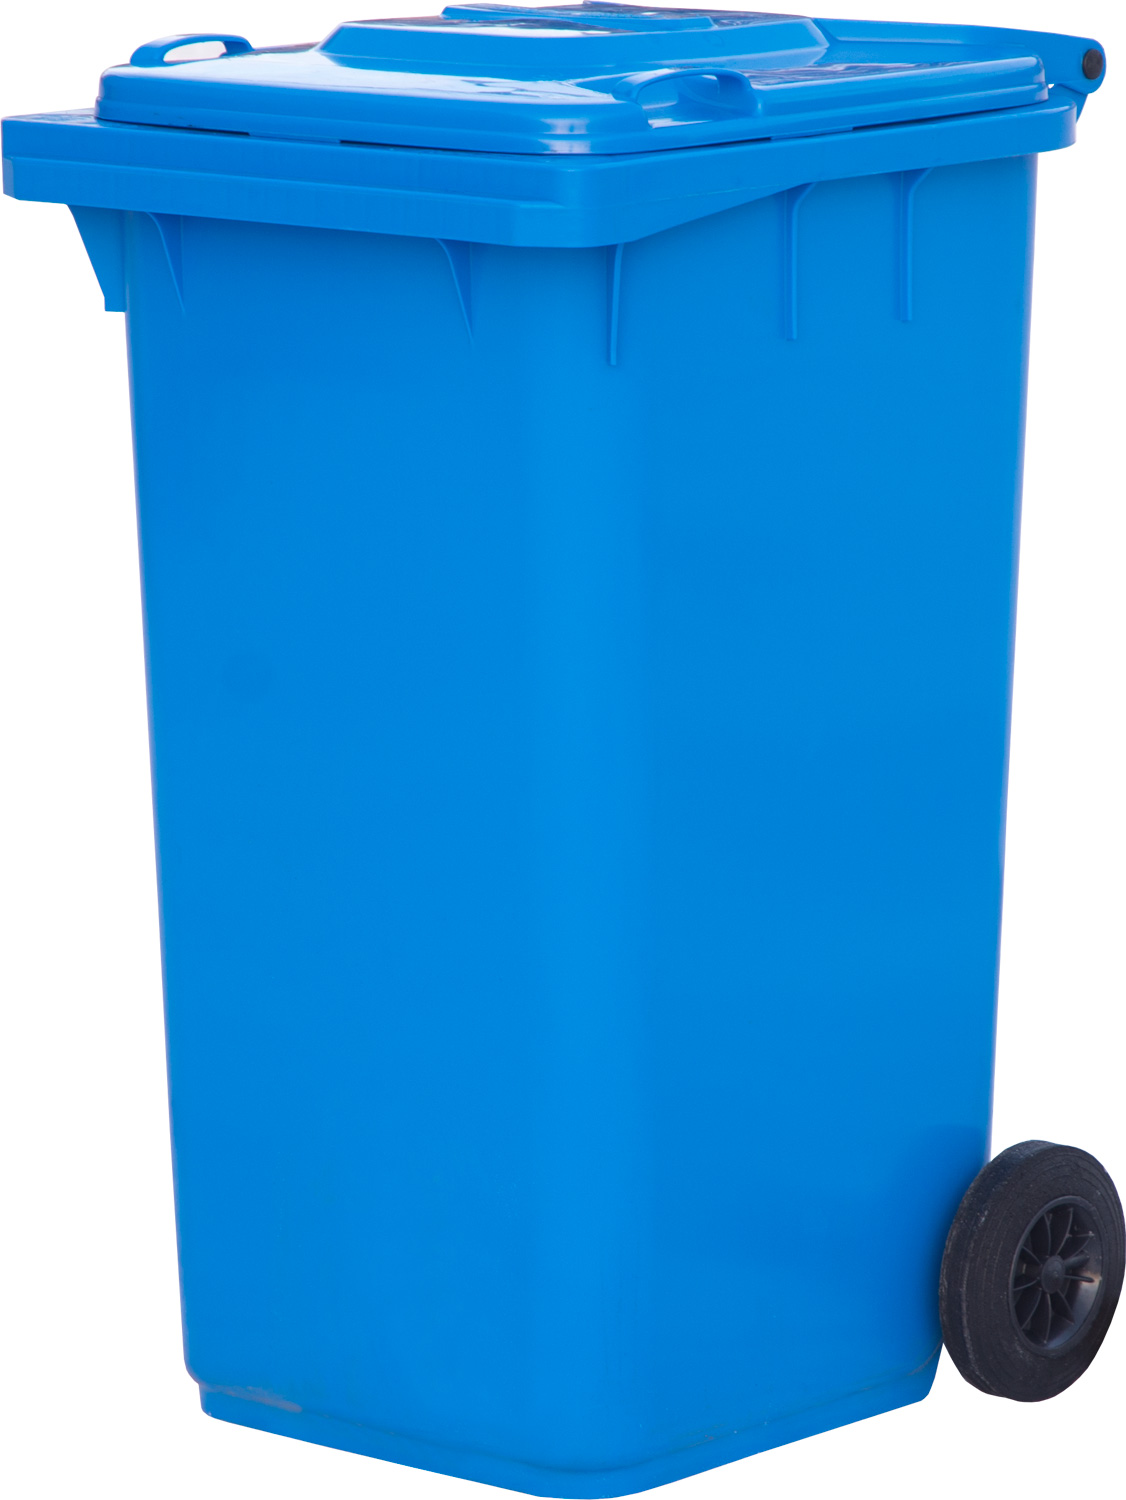 Мусорный контейнер МКТ 240 синий для сбора мусора